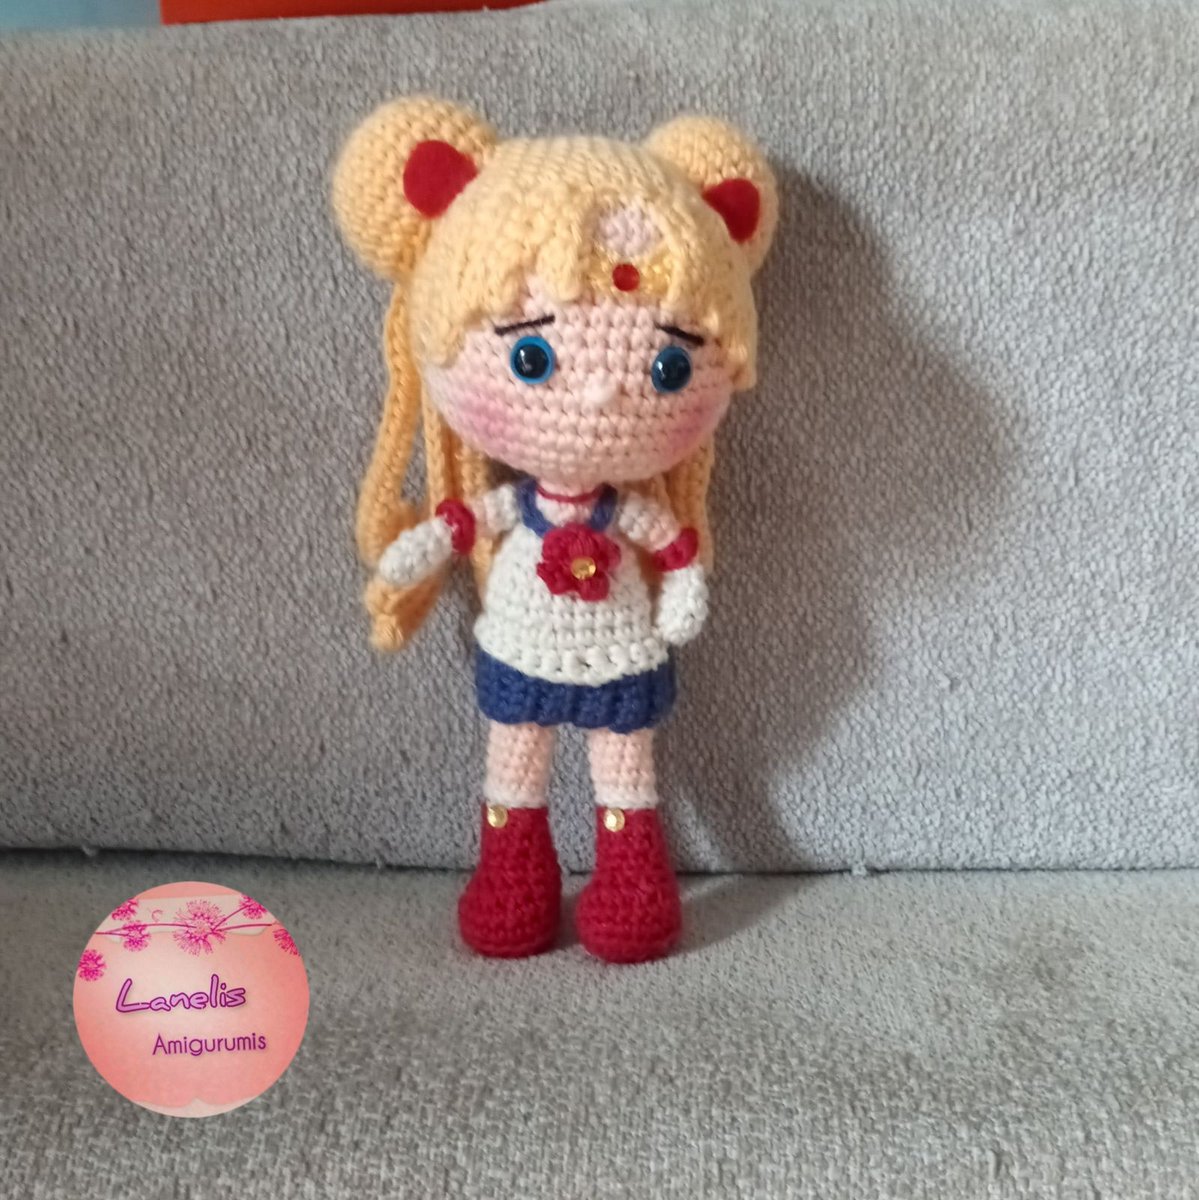 Sailor Moon me trae recuerdos de mi infancia. Una serie que veia con mi hermana, para quien hice esta muñeca. Fue un desafio pero me gustó el resultado 😄 #sailormoon #regalosoriginales #amigurumispersonalizados #amigurumidoll #handmadewithlove #artesanasporelmundo